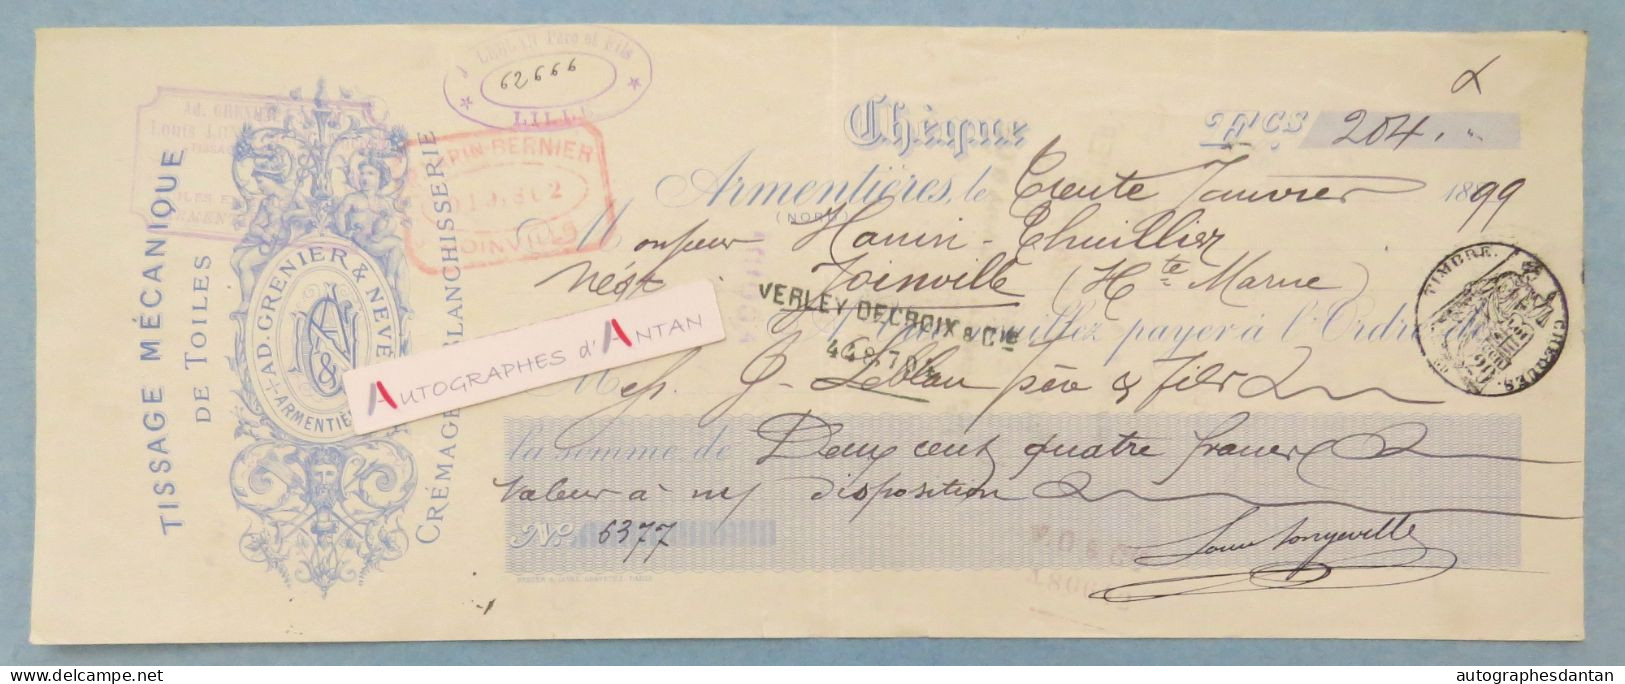 ● Armentières 1899 Beau Chèque Ad Grenier & Neveu Tissage Mécanique De Toile - Hanin Thuillier à Joinville - Rare Check - Cheques & Traveler's Cheques